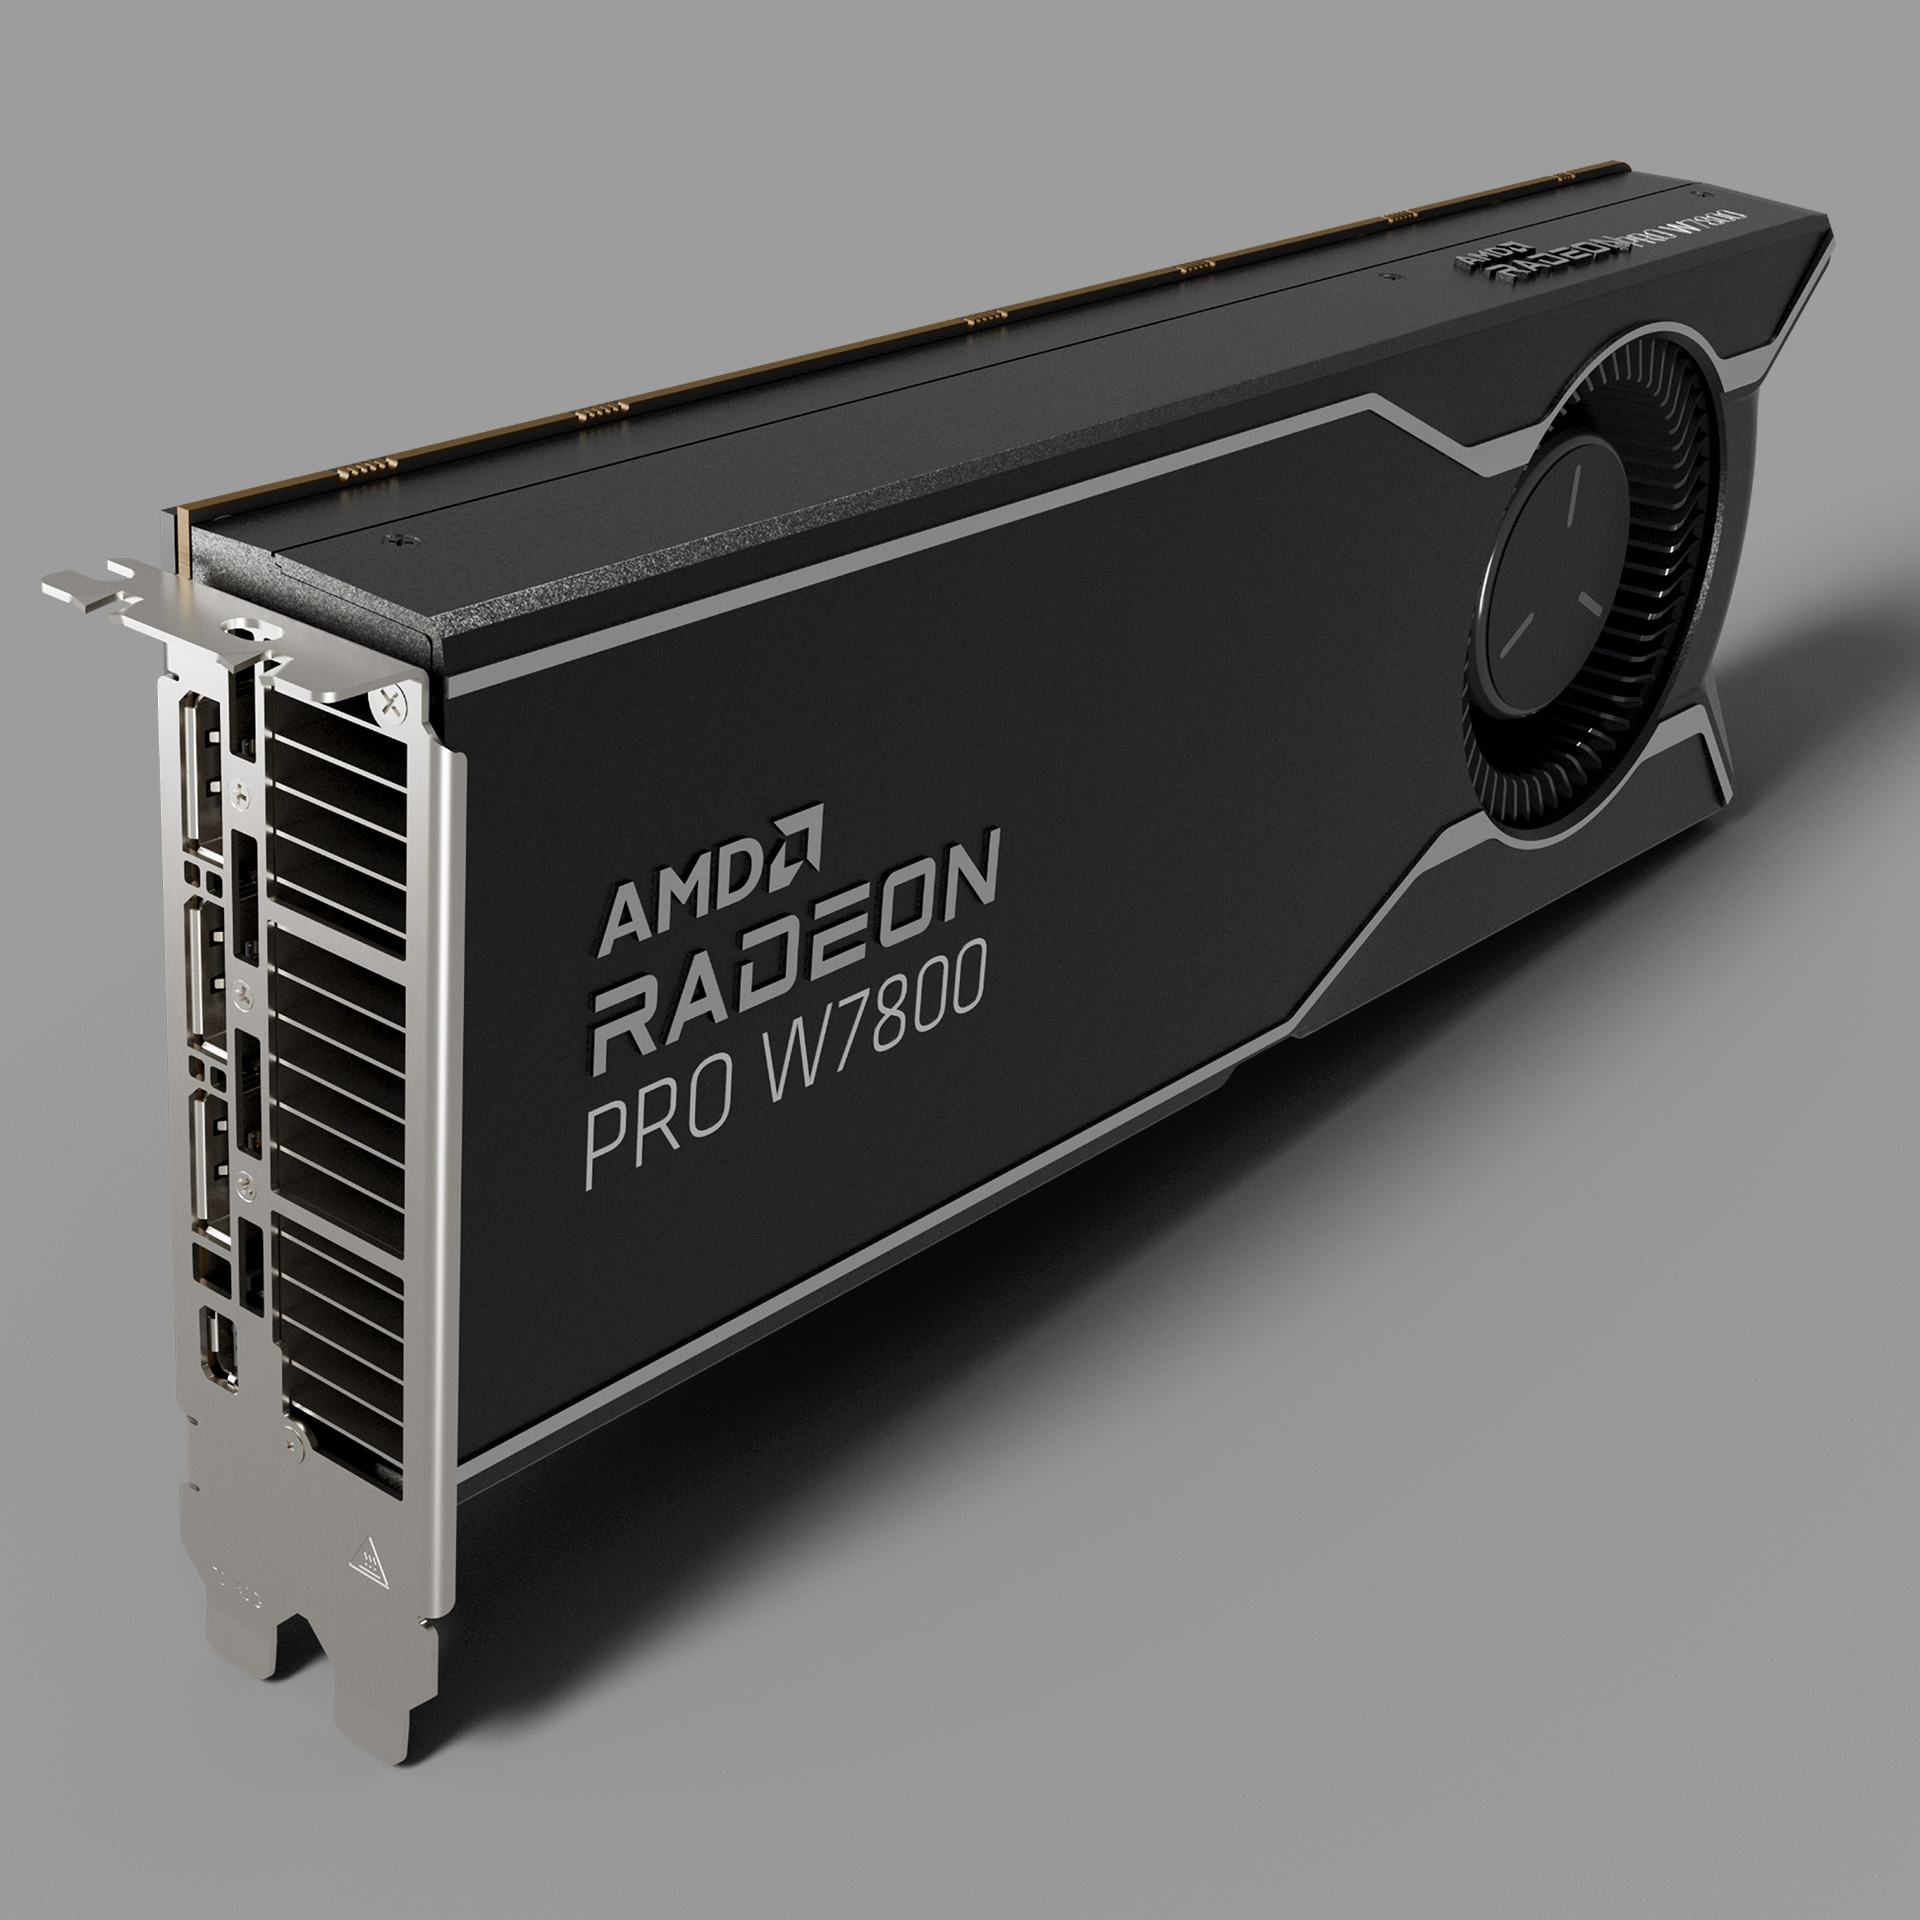 AMD Radeon PRO W7800 with ports